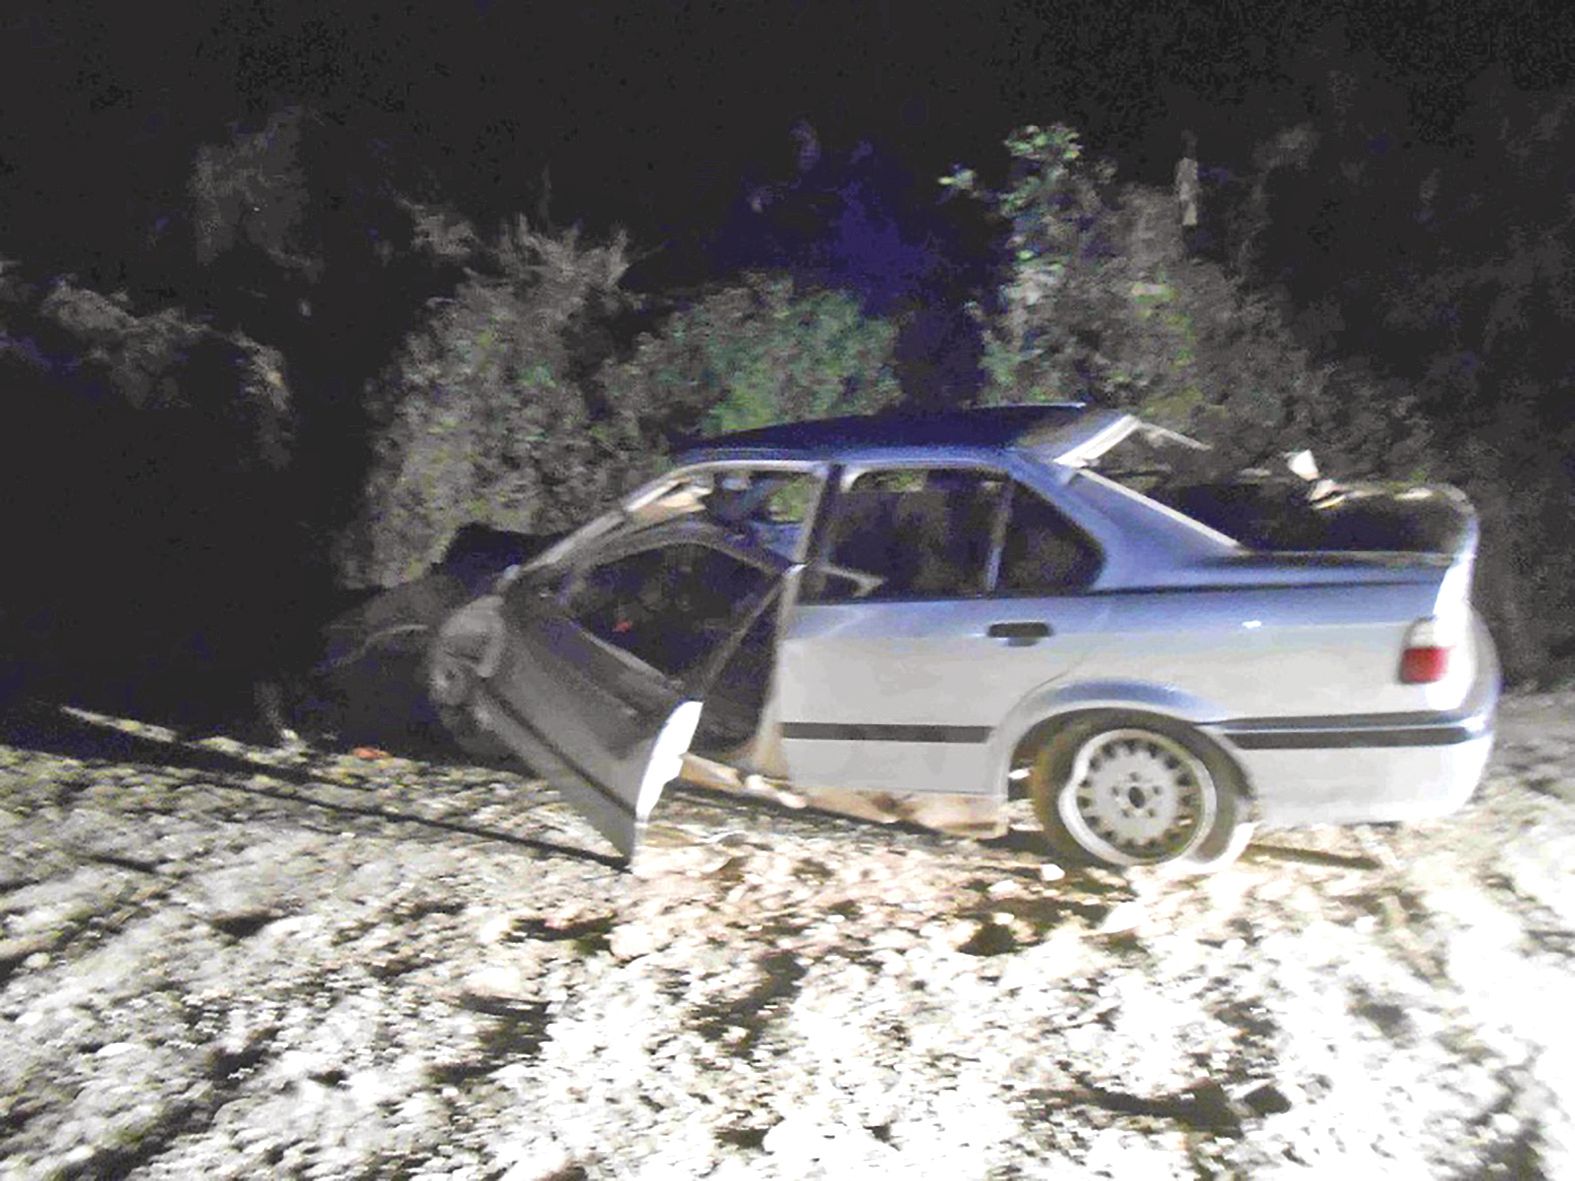 À Hienghène, près de la tribu de Ganem, la BMW a effectué une sortie de route fatale au conducteur.